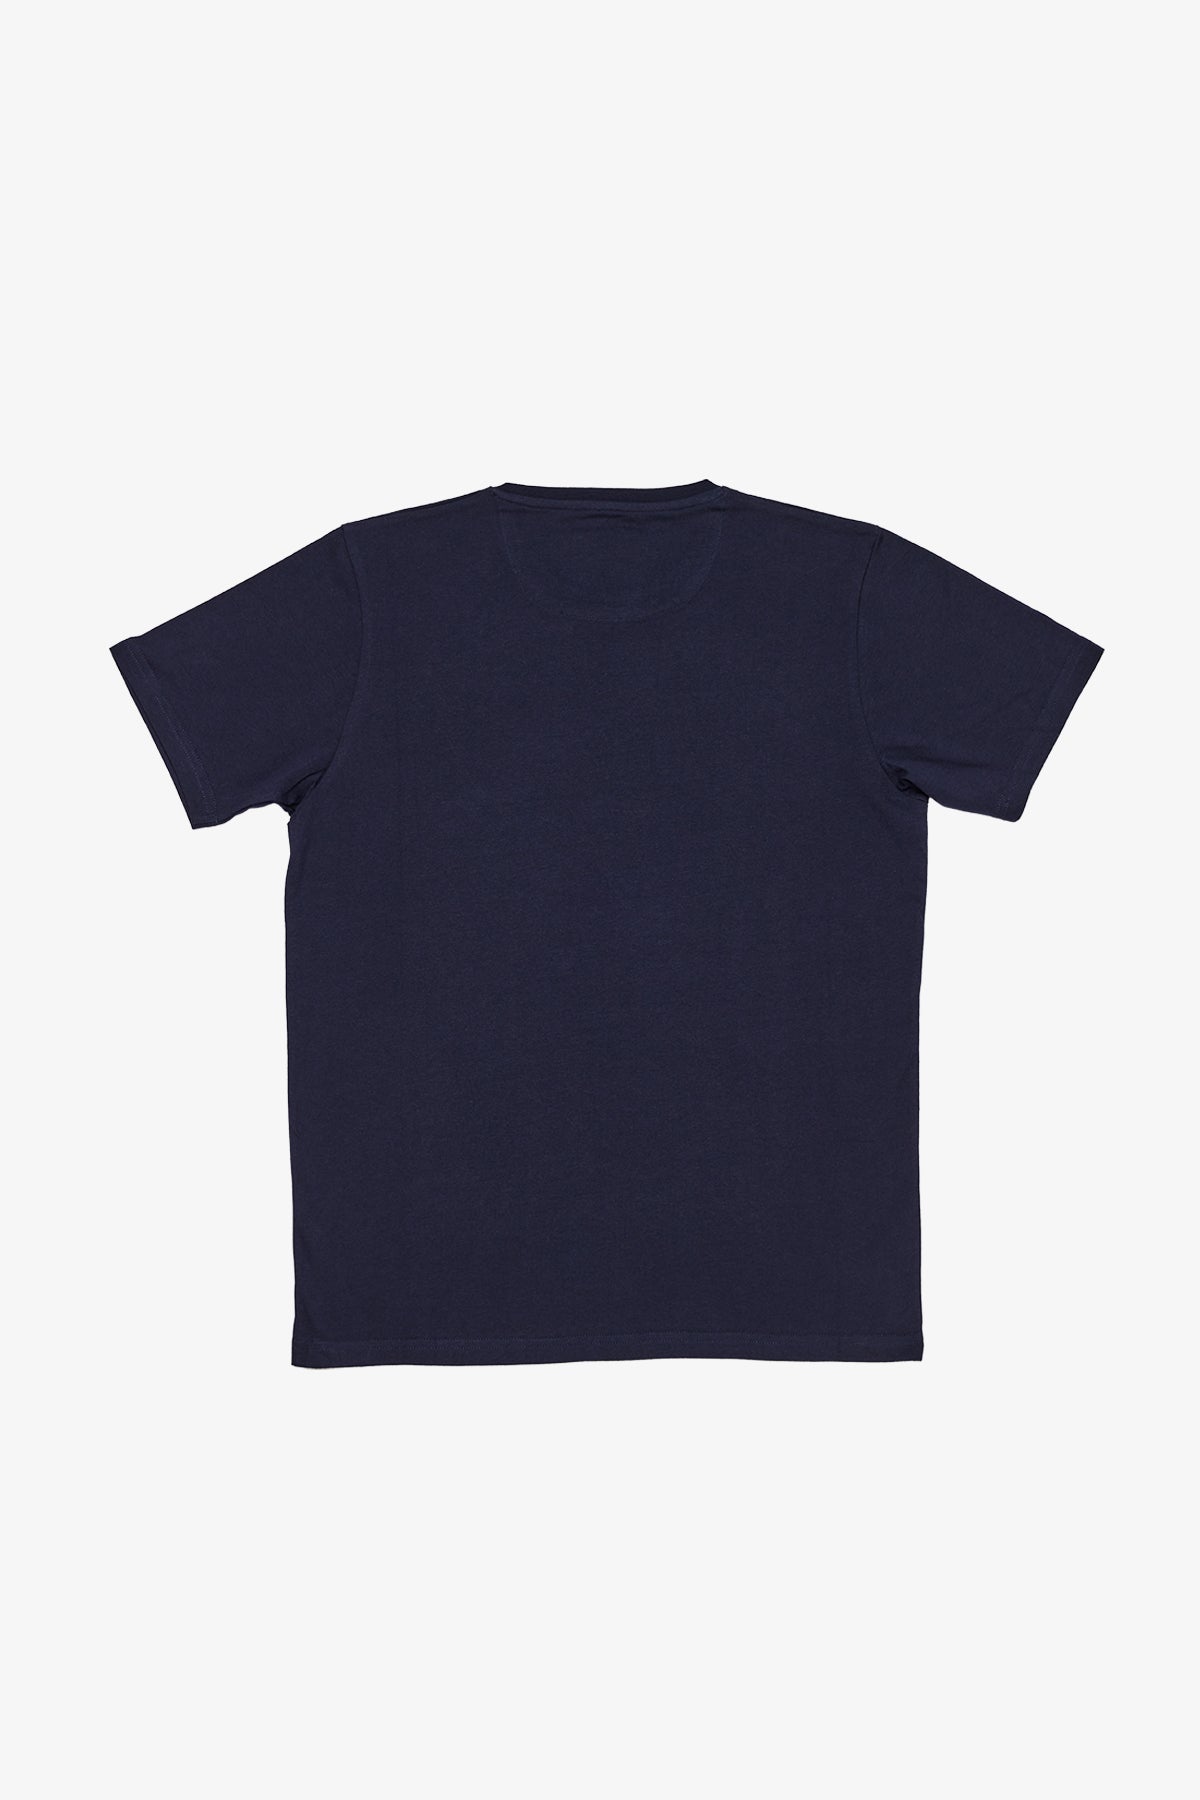 Edan - Navy T-shirt